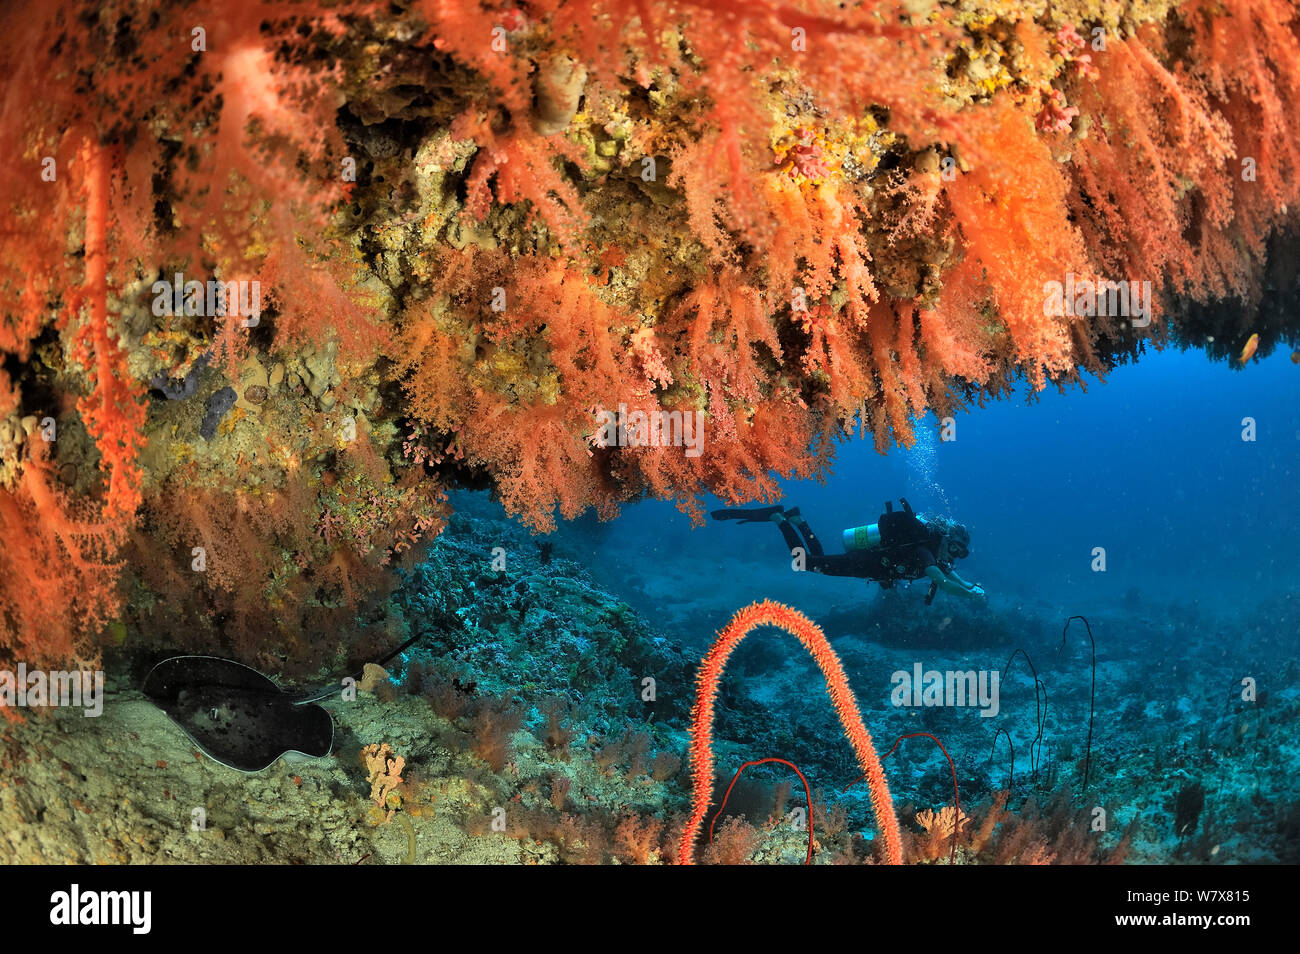 Taucher auf einem Drop off bedeckt mit Weichkorallen (Scleronephthya) mit Blackspotted Stingray (Taeniura melanospilos) Malediven. Indischen Ozean. April 2011. Stockfoto